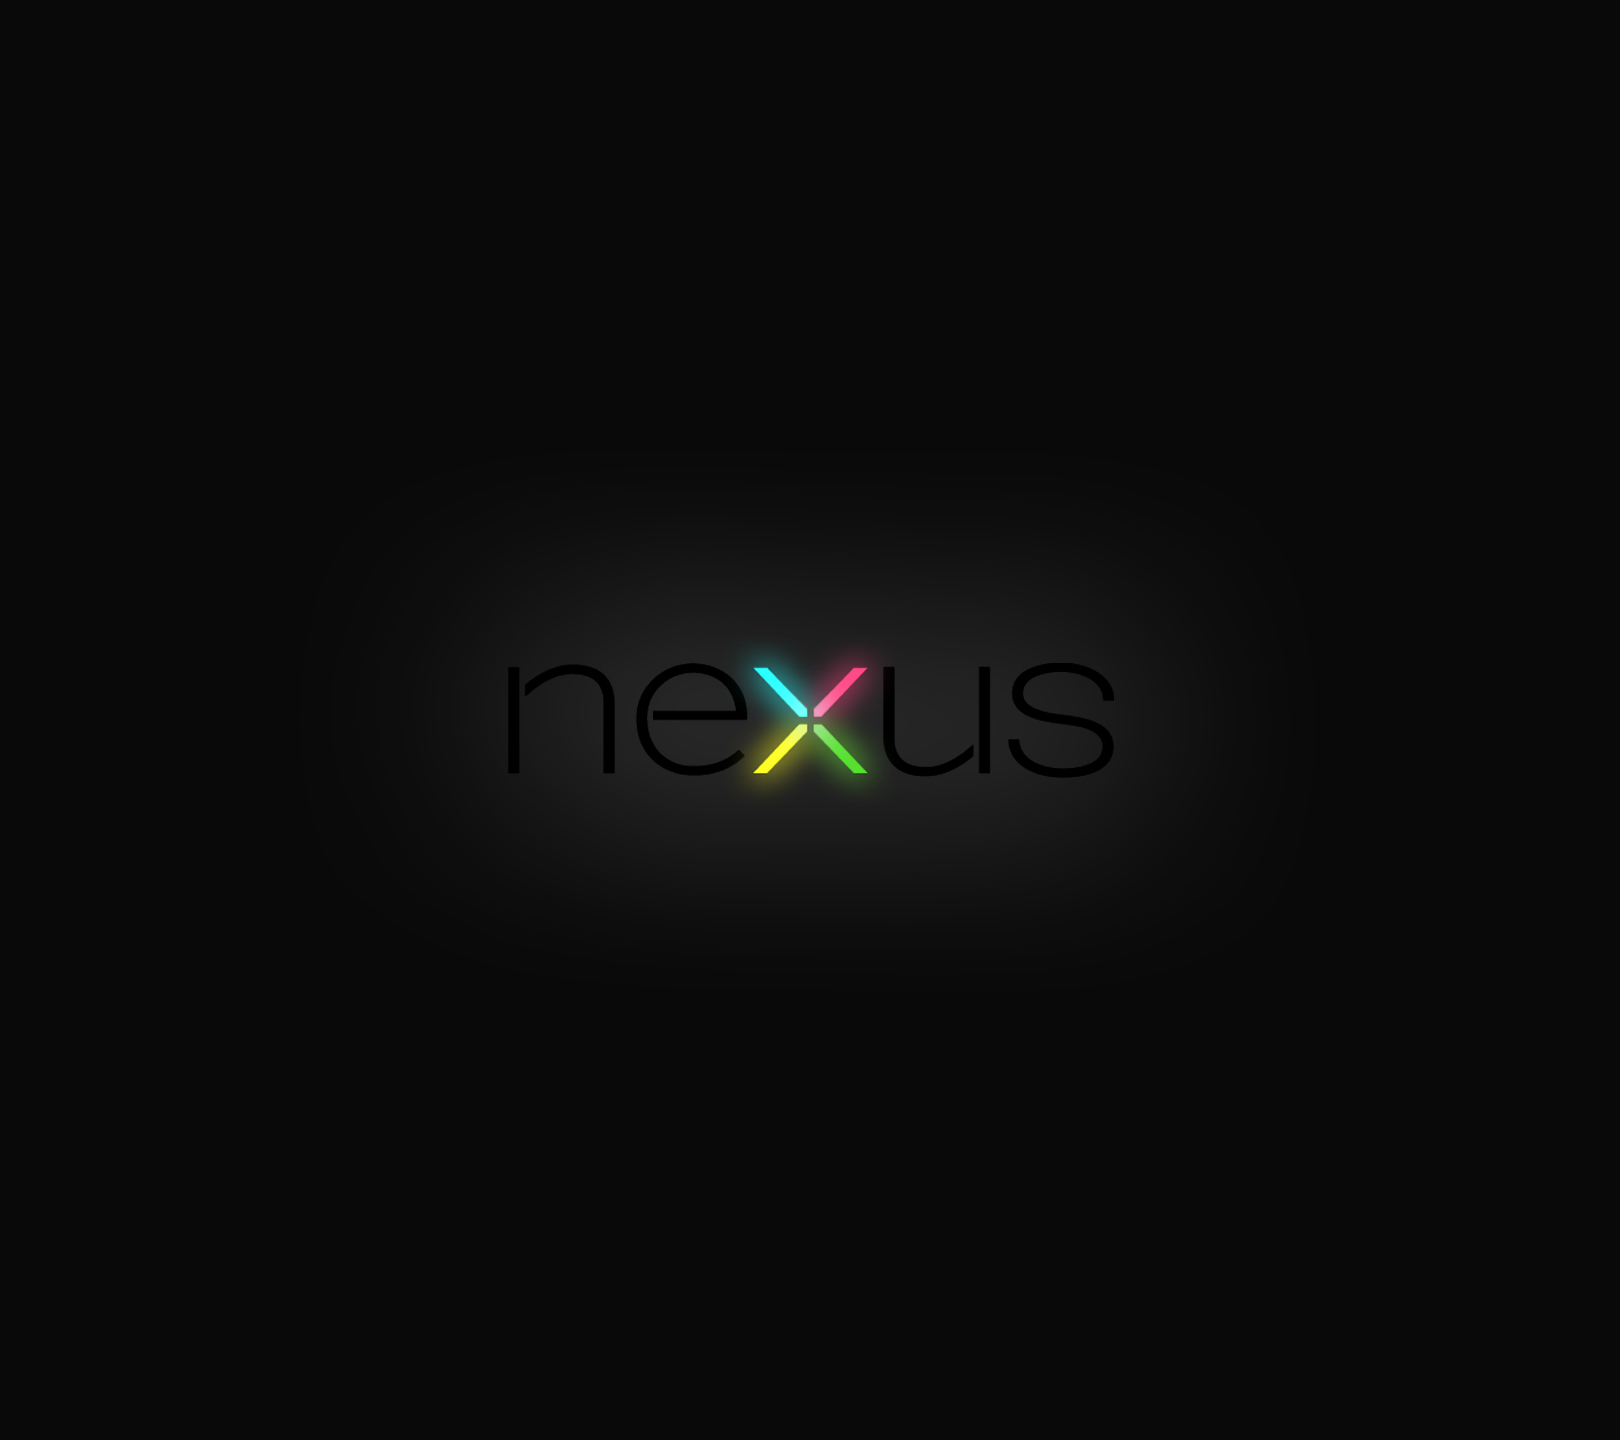 Description Nexus Wallpaper is a hi res Wallpaper for pc desktops